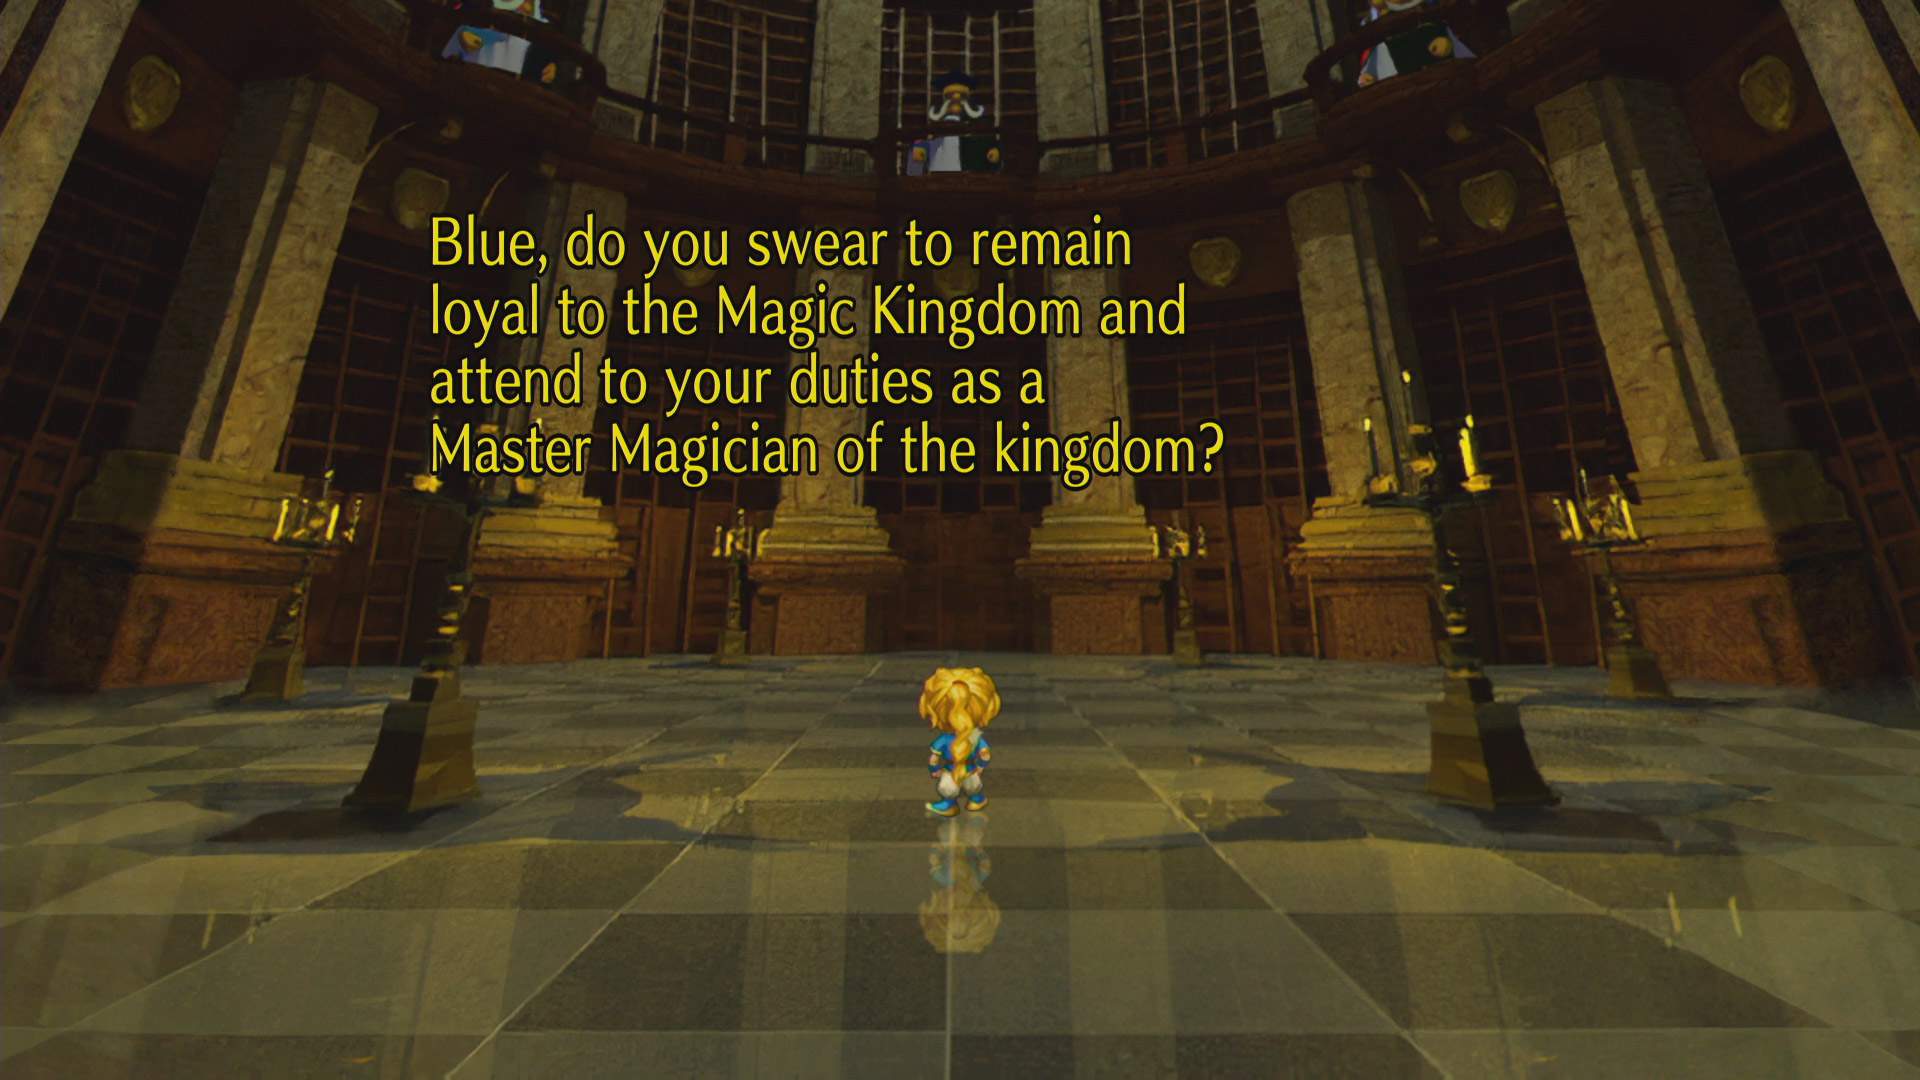 Der Charakter BLUE aus SaGa Frontier Remastered, wie er in der Mitte eines Raums steht. Von oben blicken weitere Charaktere auf ihn herab. Außerdem sind Dialogzeilen des Spiels zu sehen.